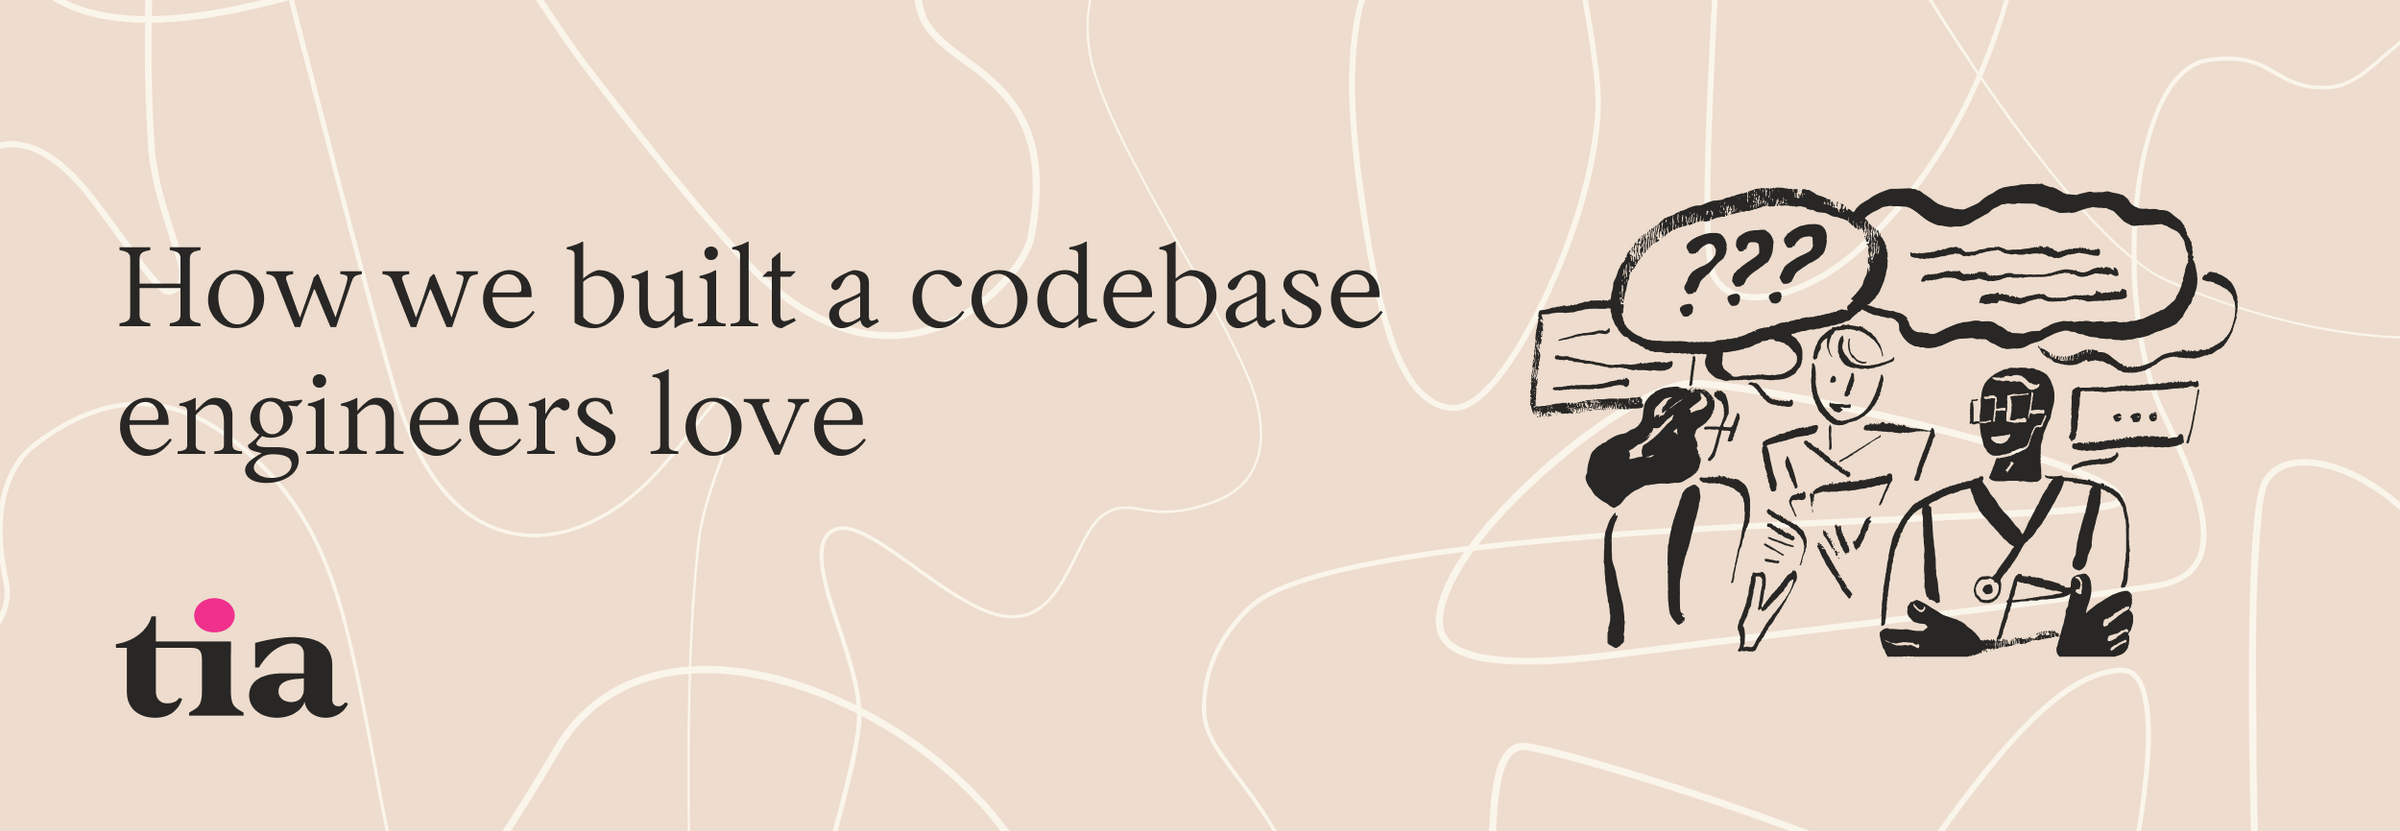 How we built a codebase engineers love